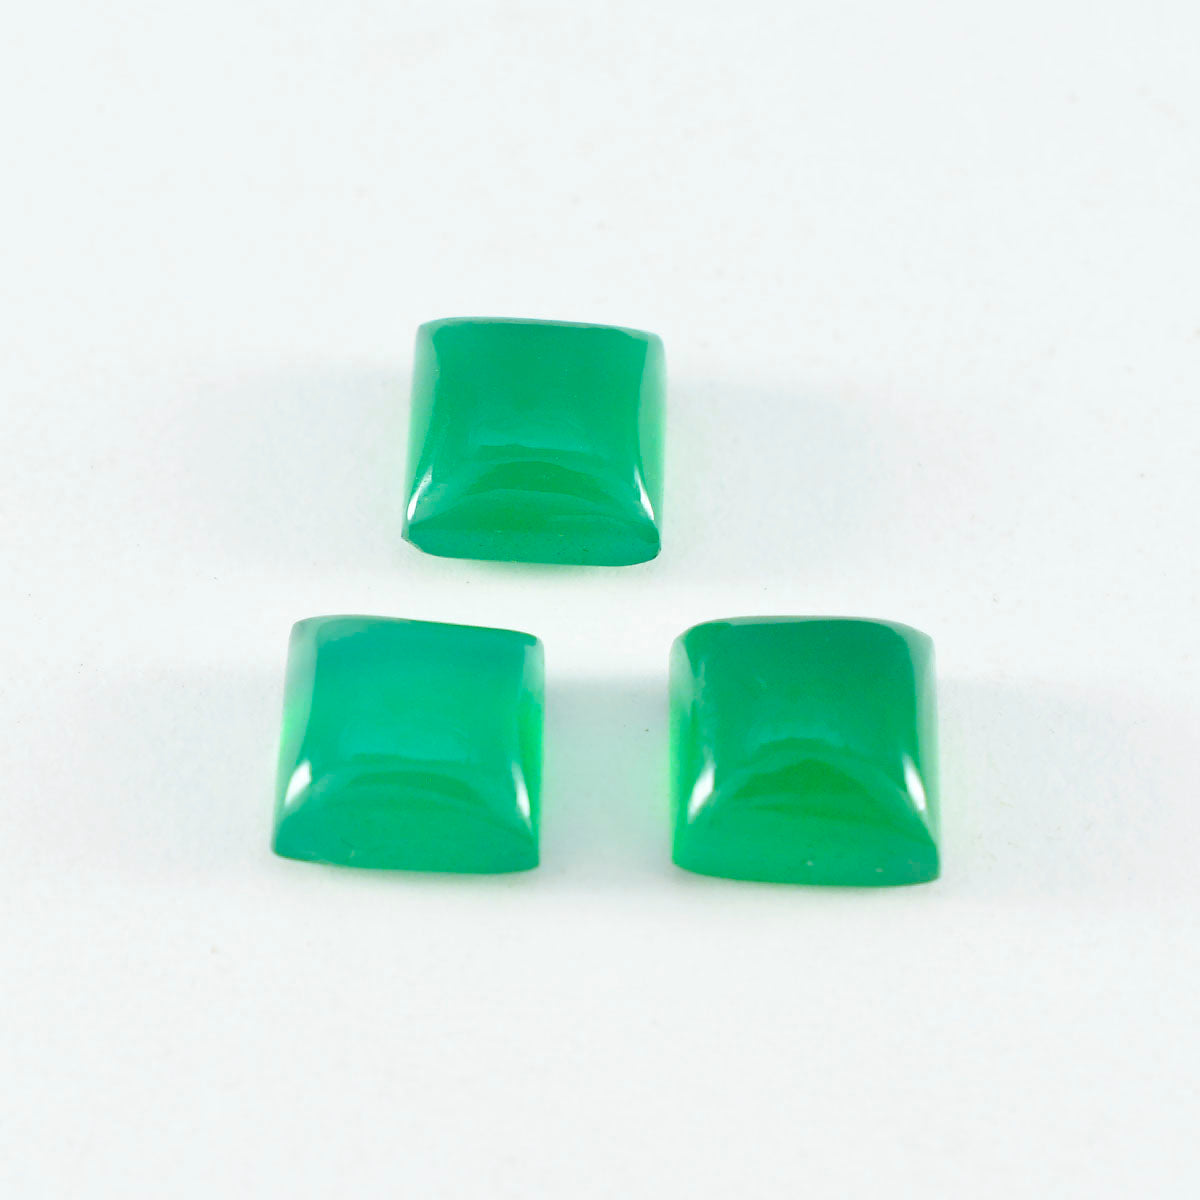 Riyogems 1 pieza cabujón de ónix verde 10x10mm forma cuadrada gemas bonitas de calidad